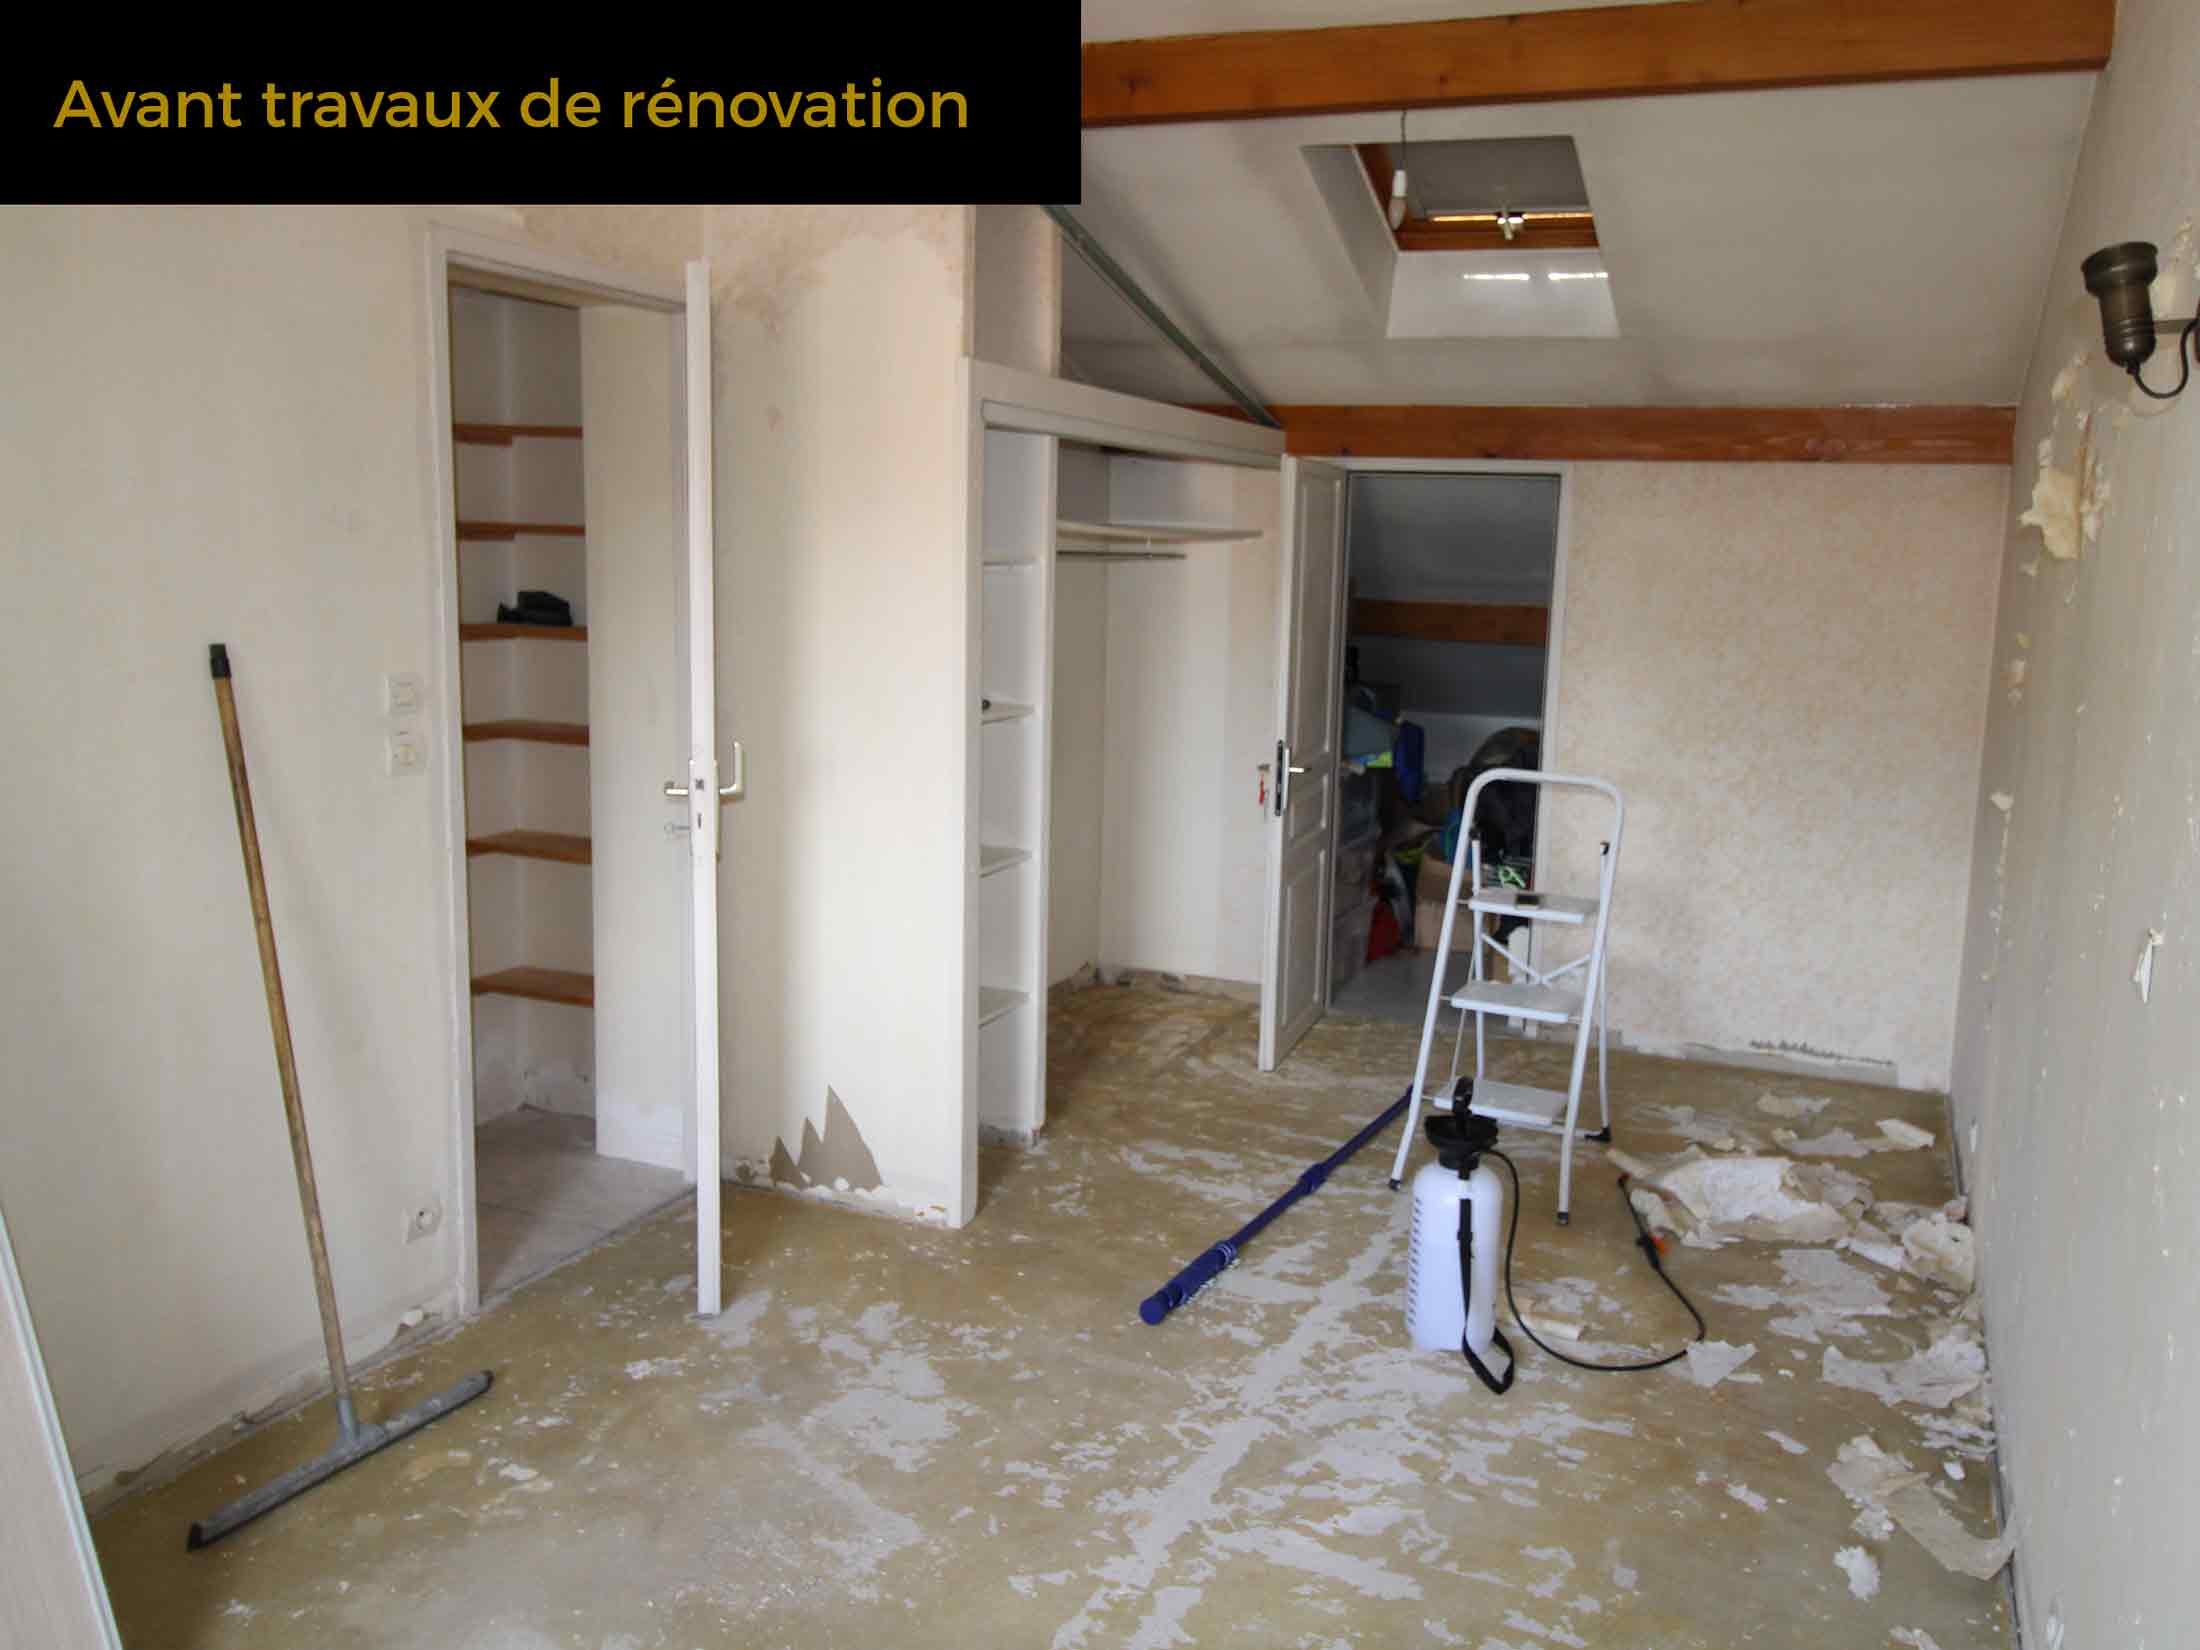 9a-travaux-renovation-maison-champagne